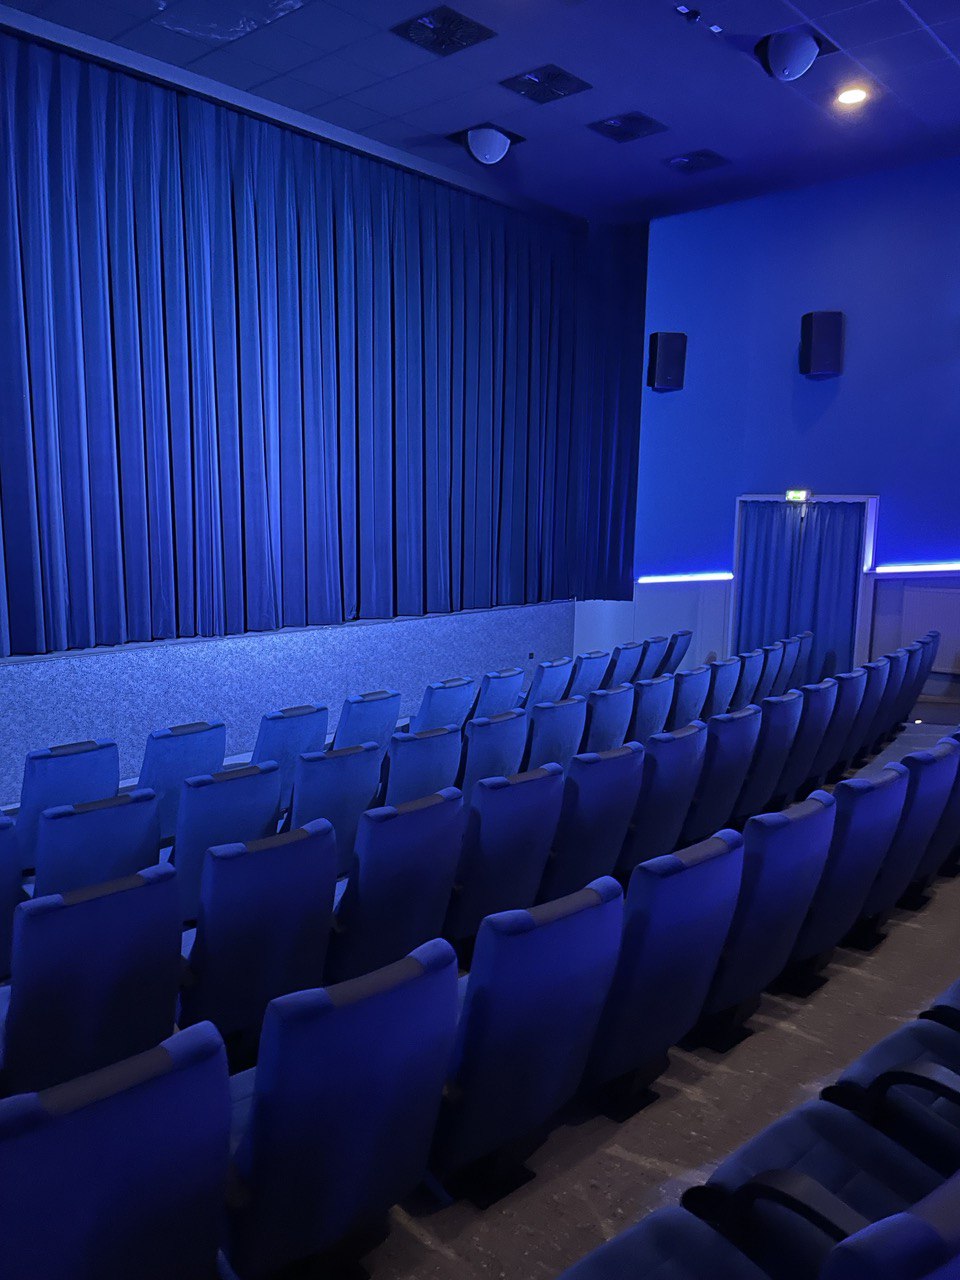 Englischunterricht im Kinosaal: Die Q1 und Q2 zu Besuch in „Avatar“